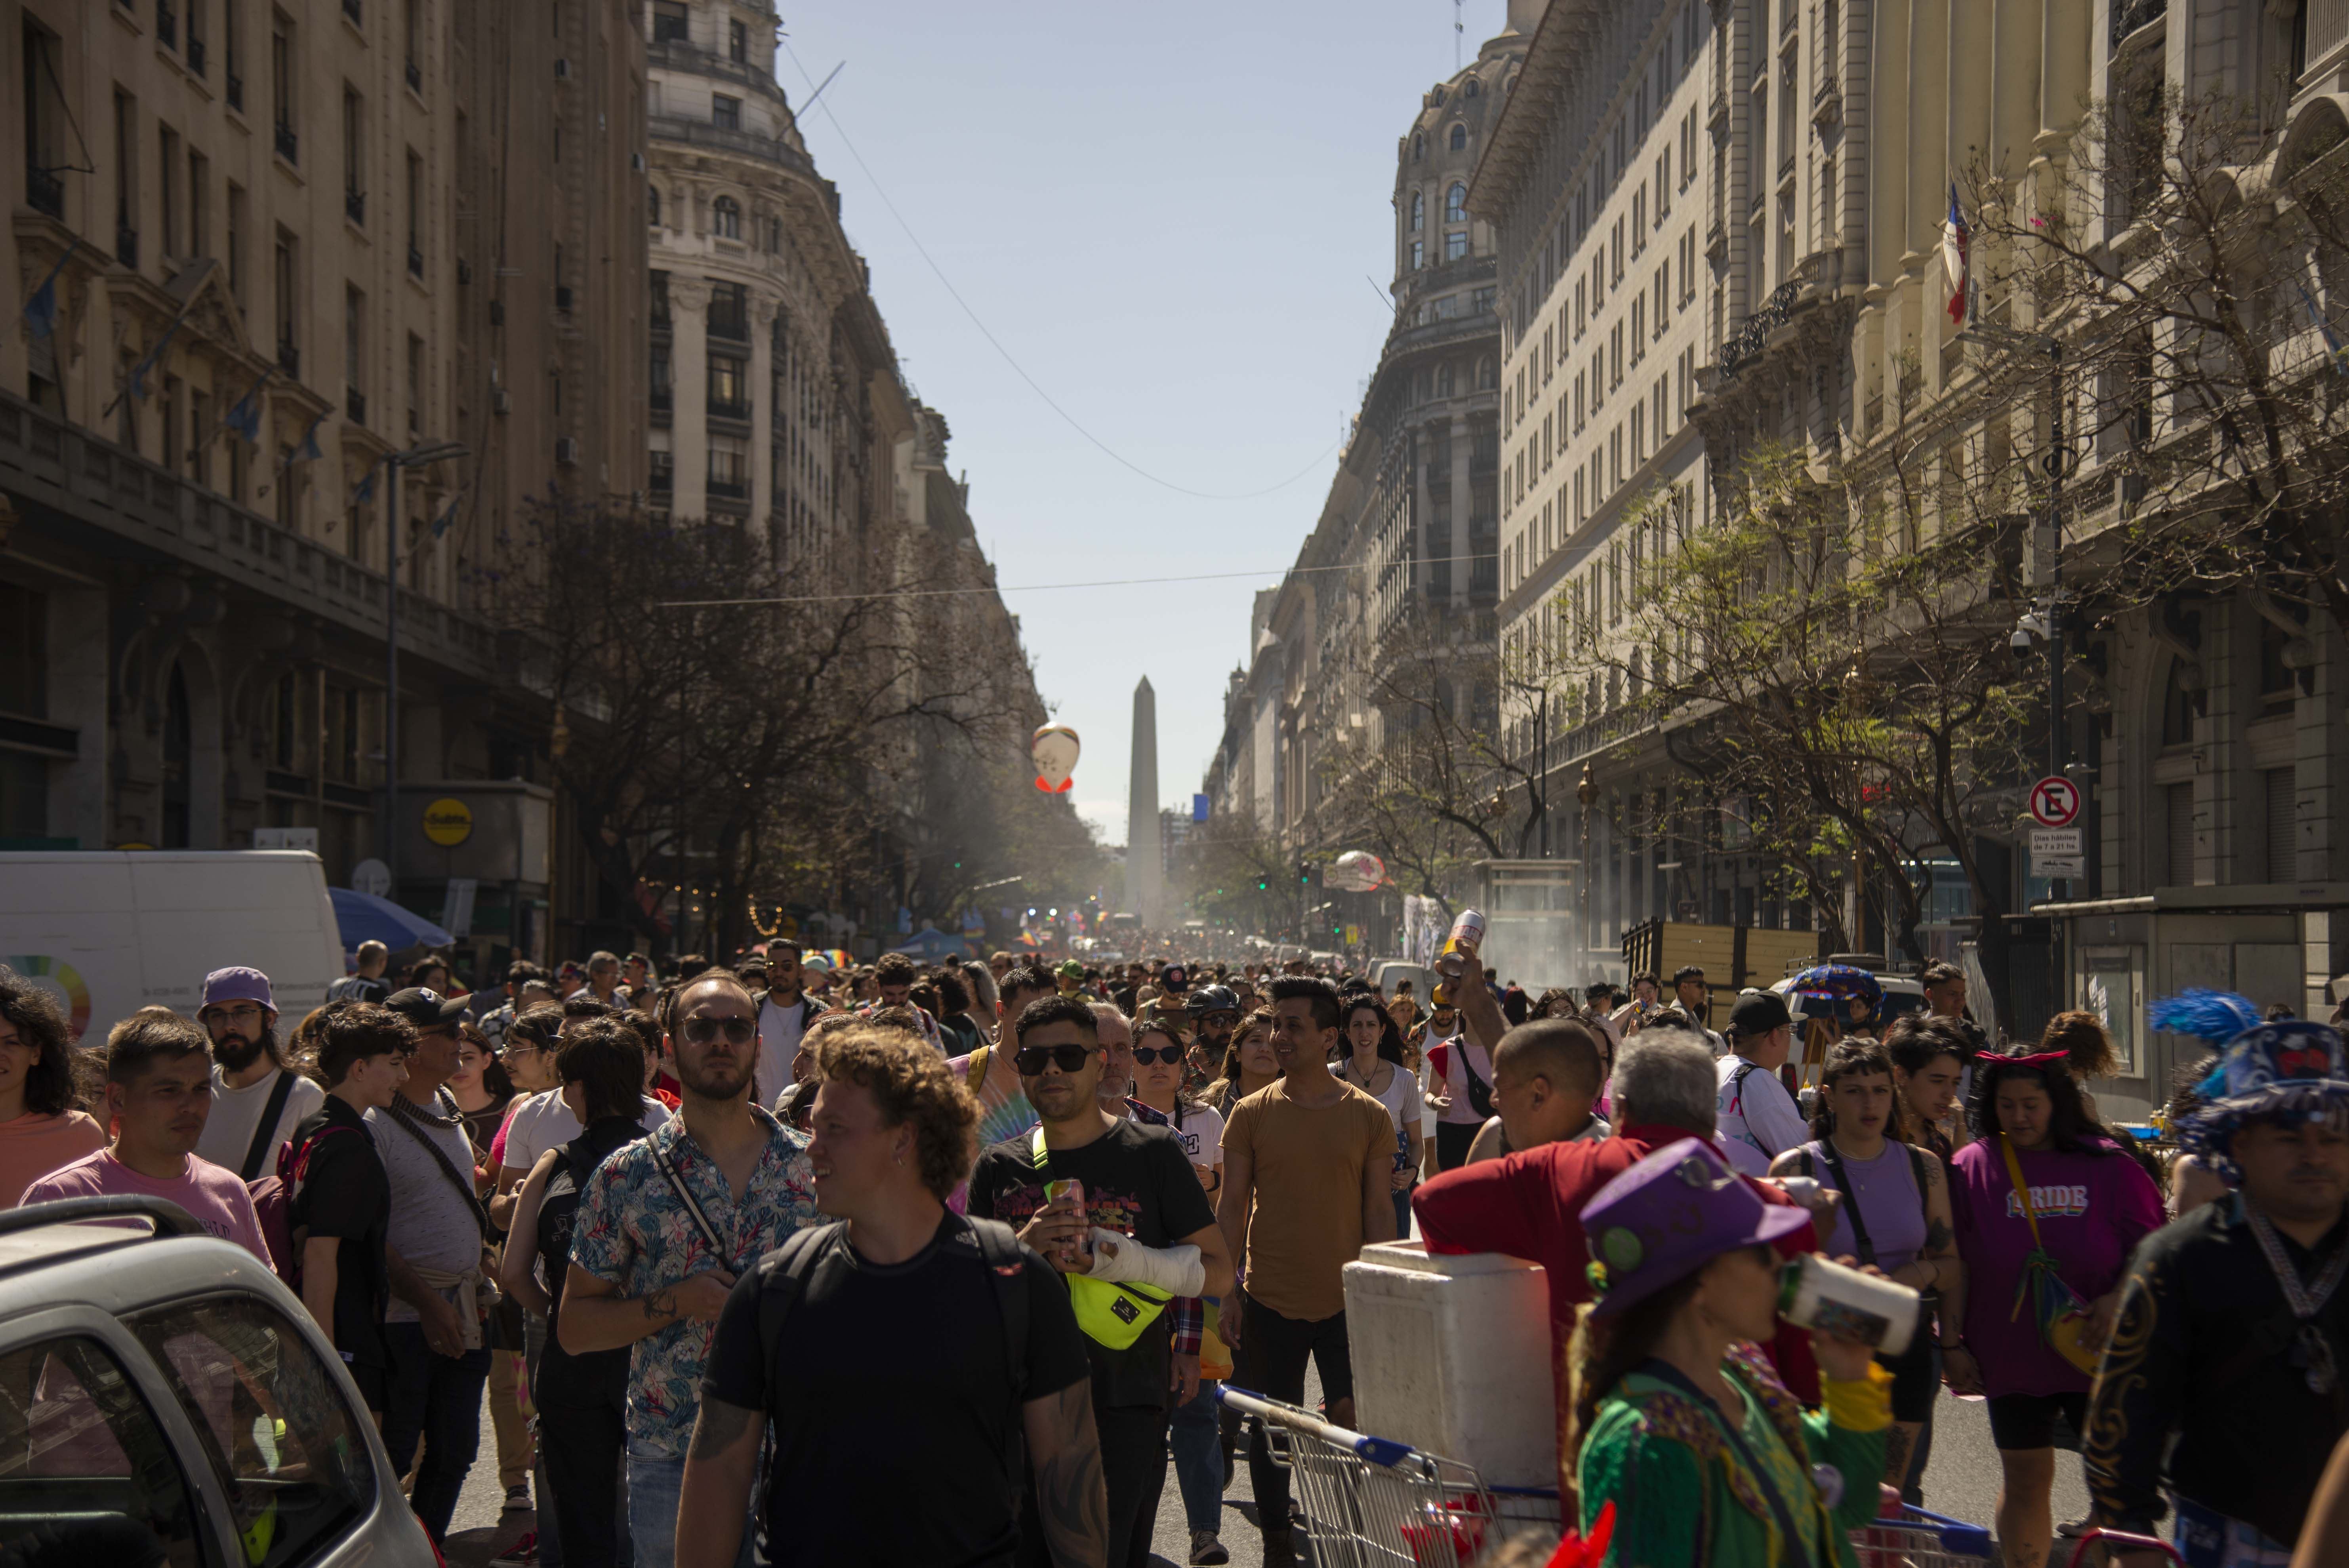 Después de la Semana del Orgullo BA, donde hubo muchas actividades para celebrar la diversidad, llegó el día de la histórica marcha que empezó en Plaza de Mayo (Crédito: Cecilia Frenkel)